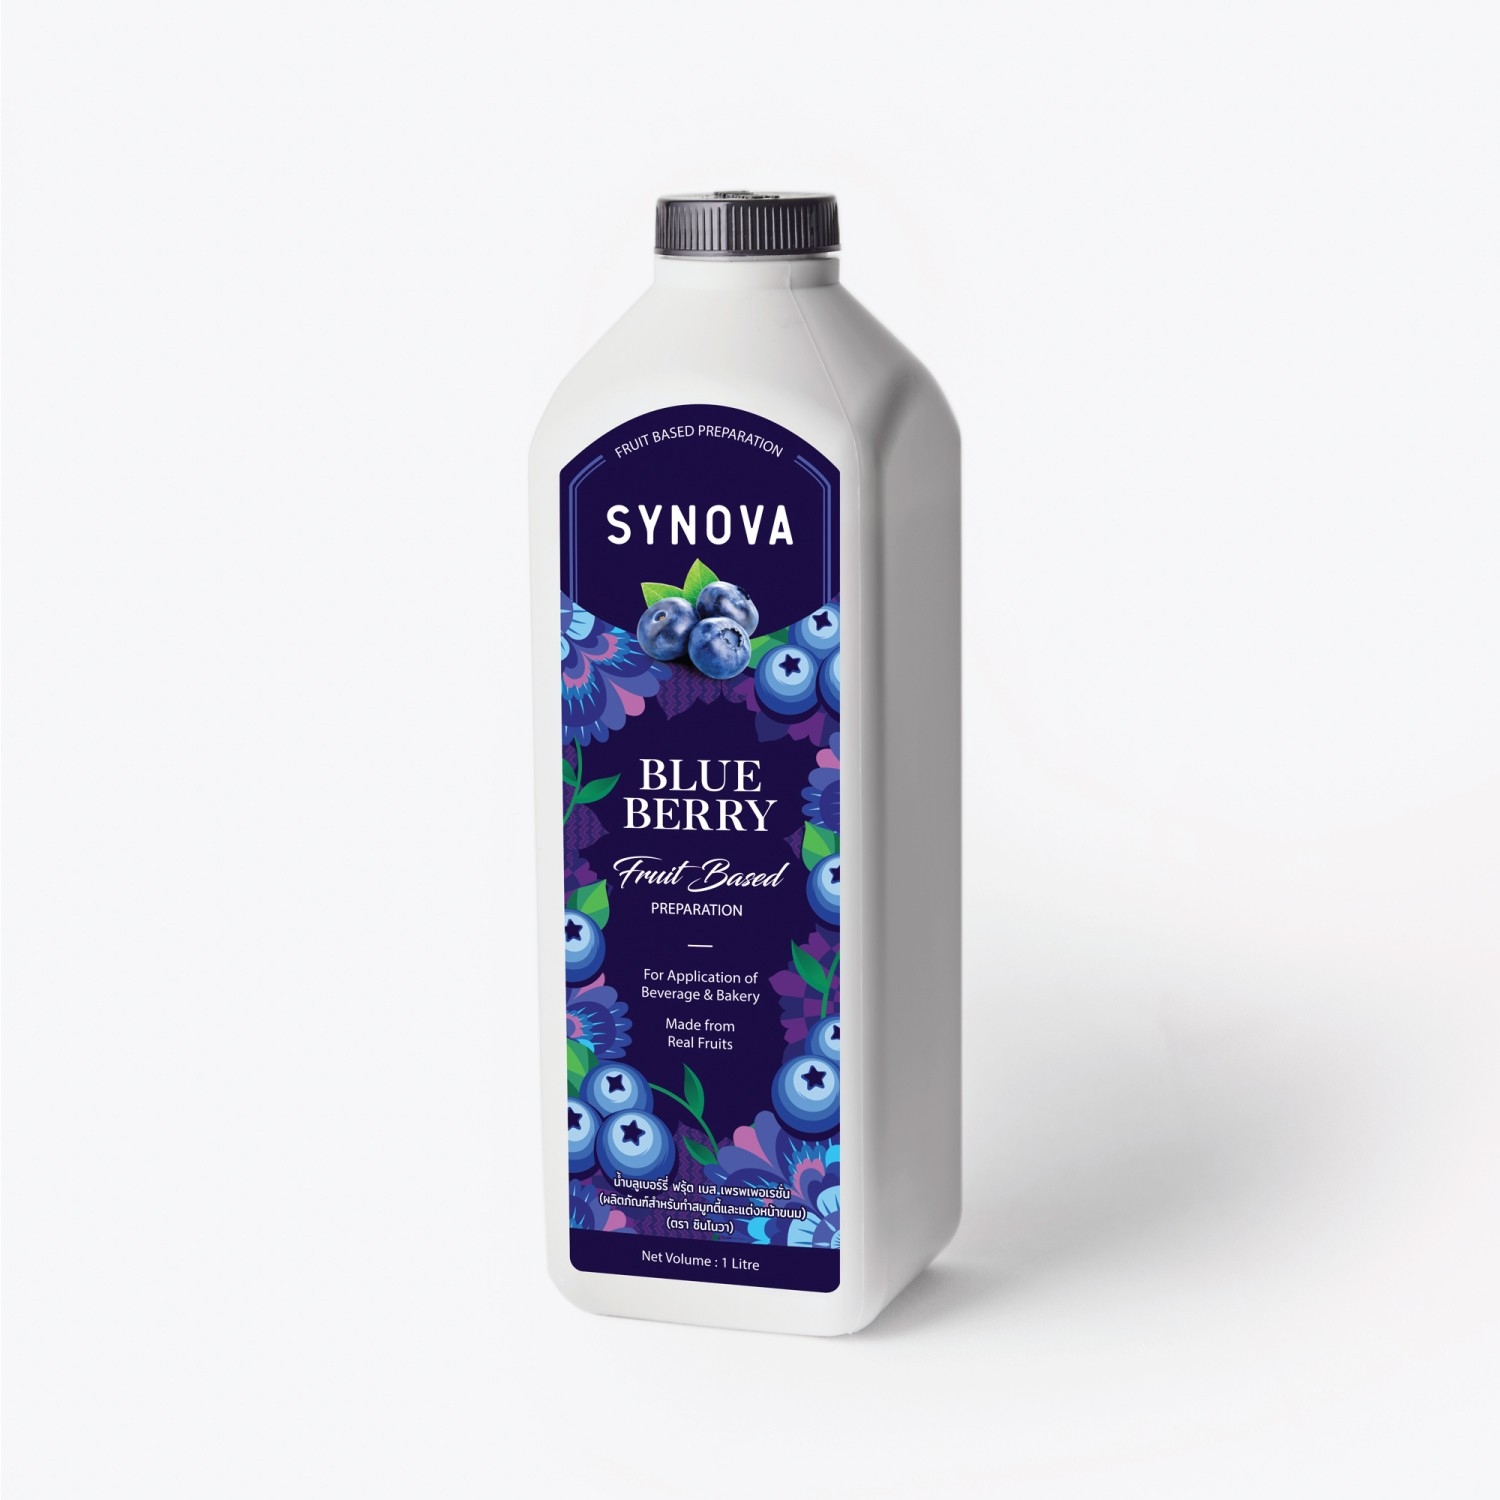 น้ำผลไม้เข้มข้น : SYNOVA ซอสบลูเบอรี่เข้มข้น (ยกกล่อง)